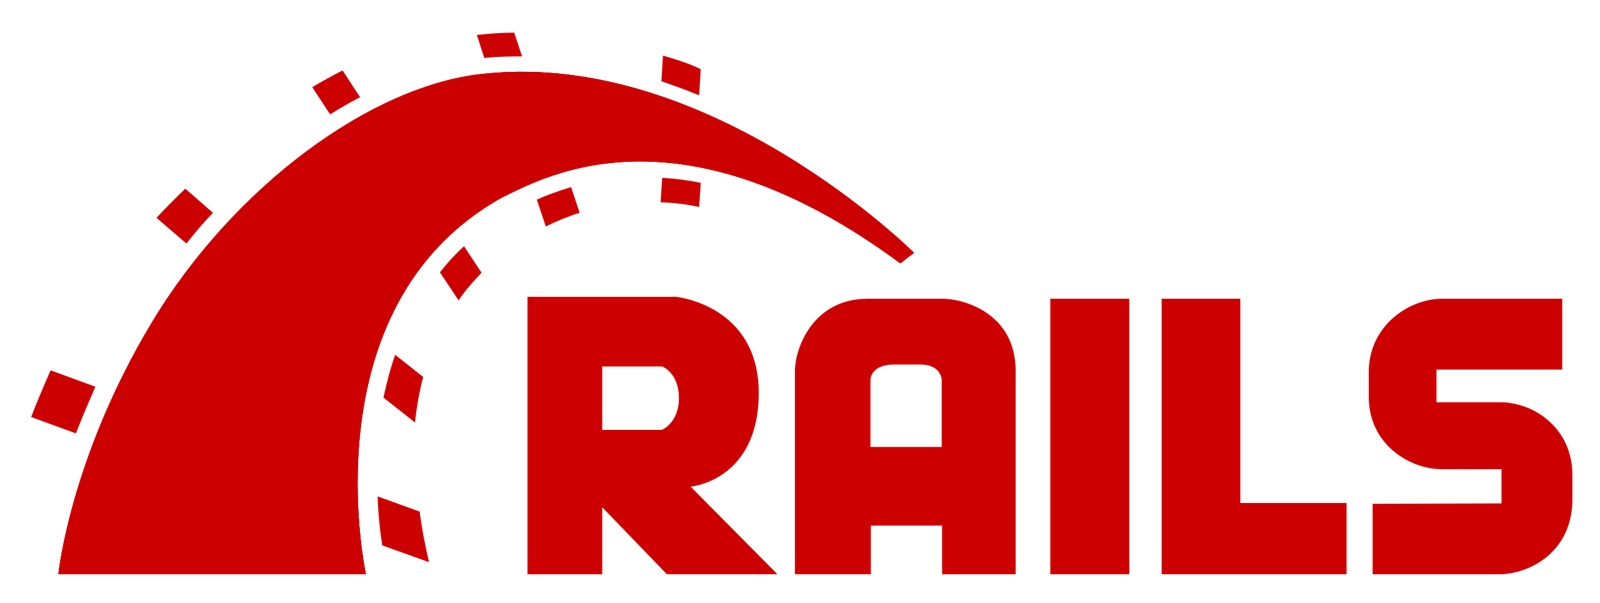 Ruby/Railsでの開発に関わる疑問に答えます！-image1